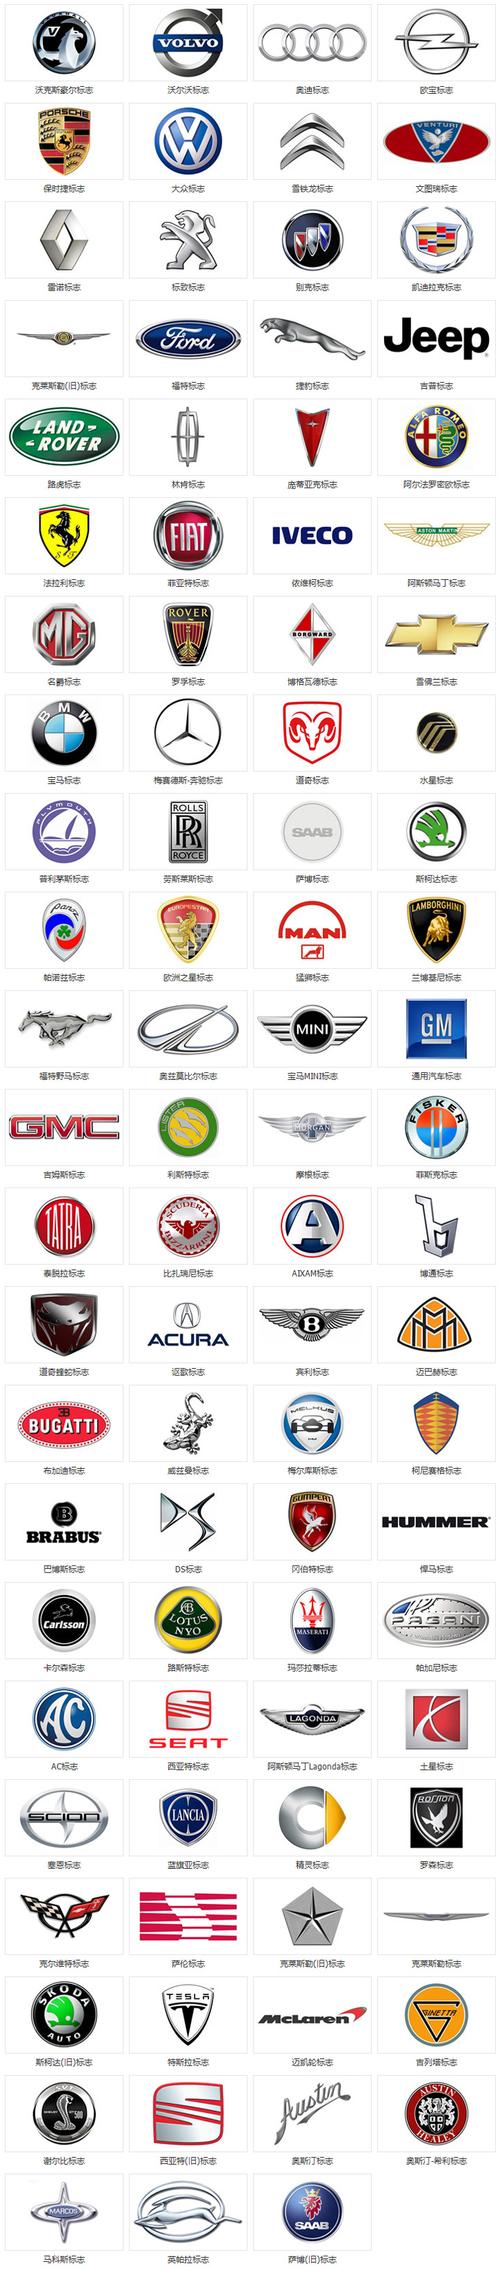 世界名车标志及名称-国产汽车标志图片大全-各种汽车品牌标志大